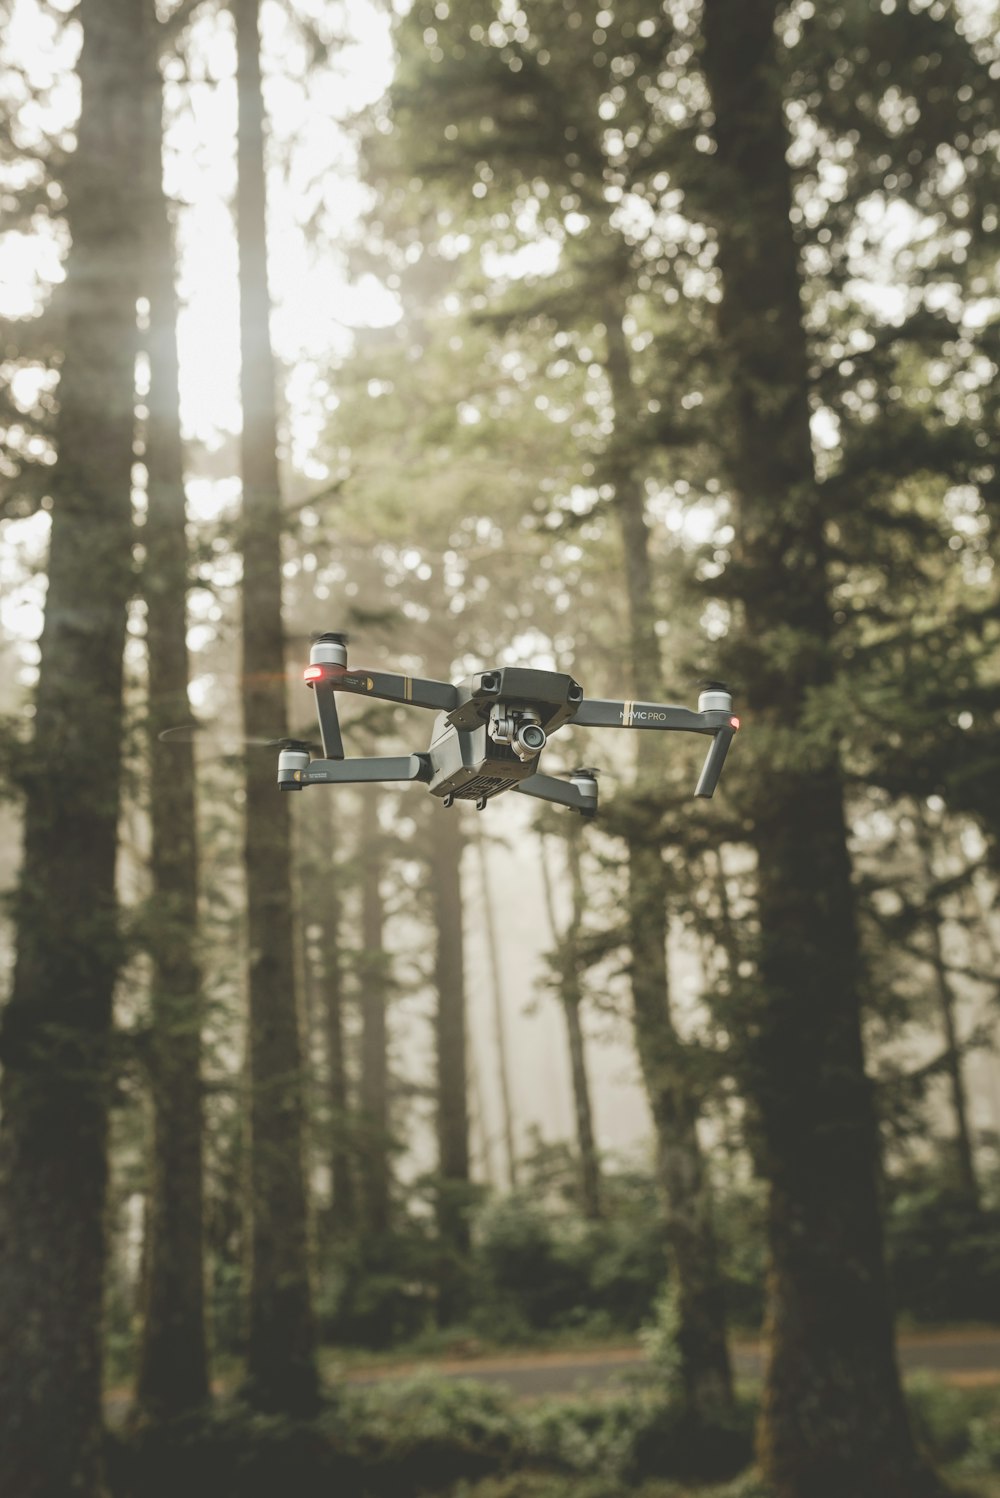 φωτογραφία drone Mavic Pro quadcopter μέσα σε δάσος